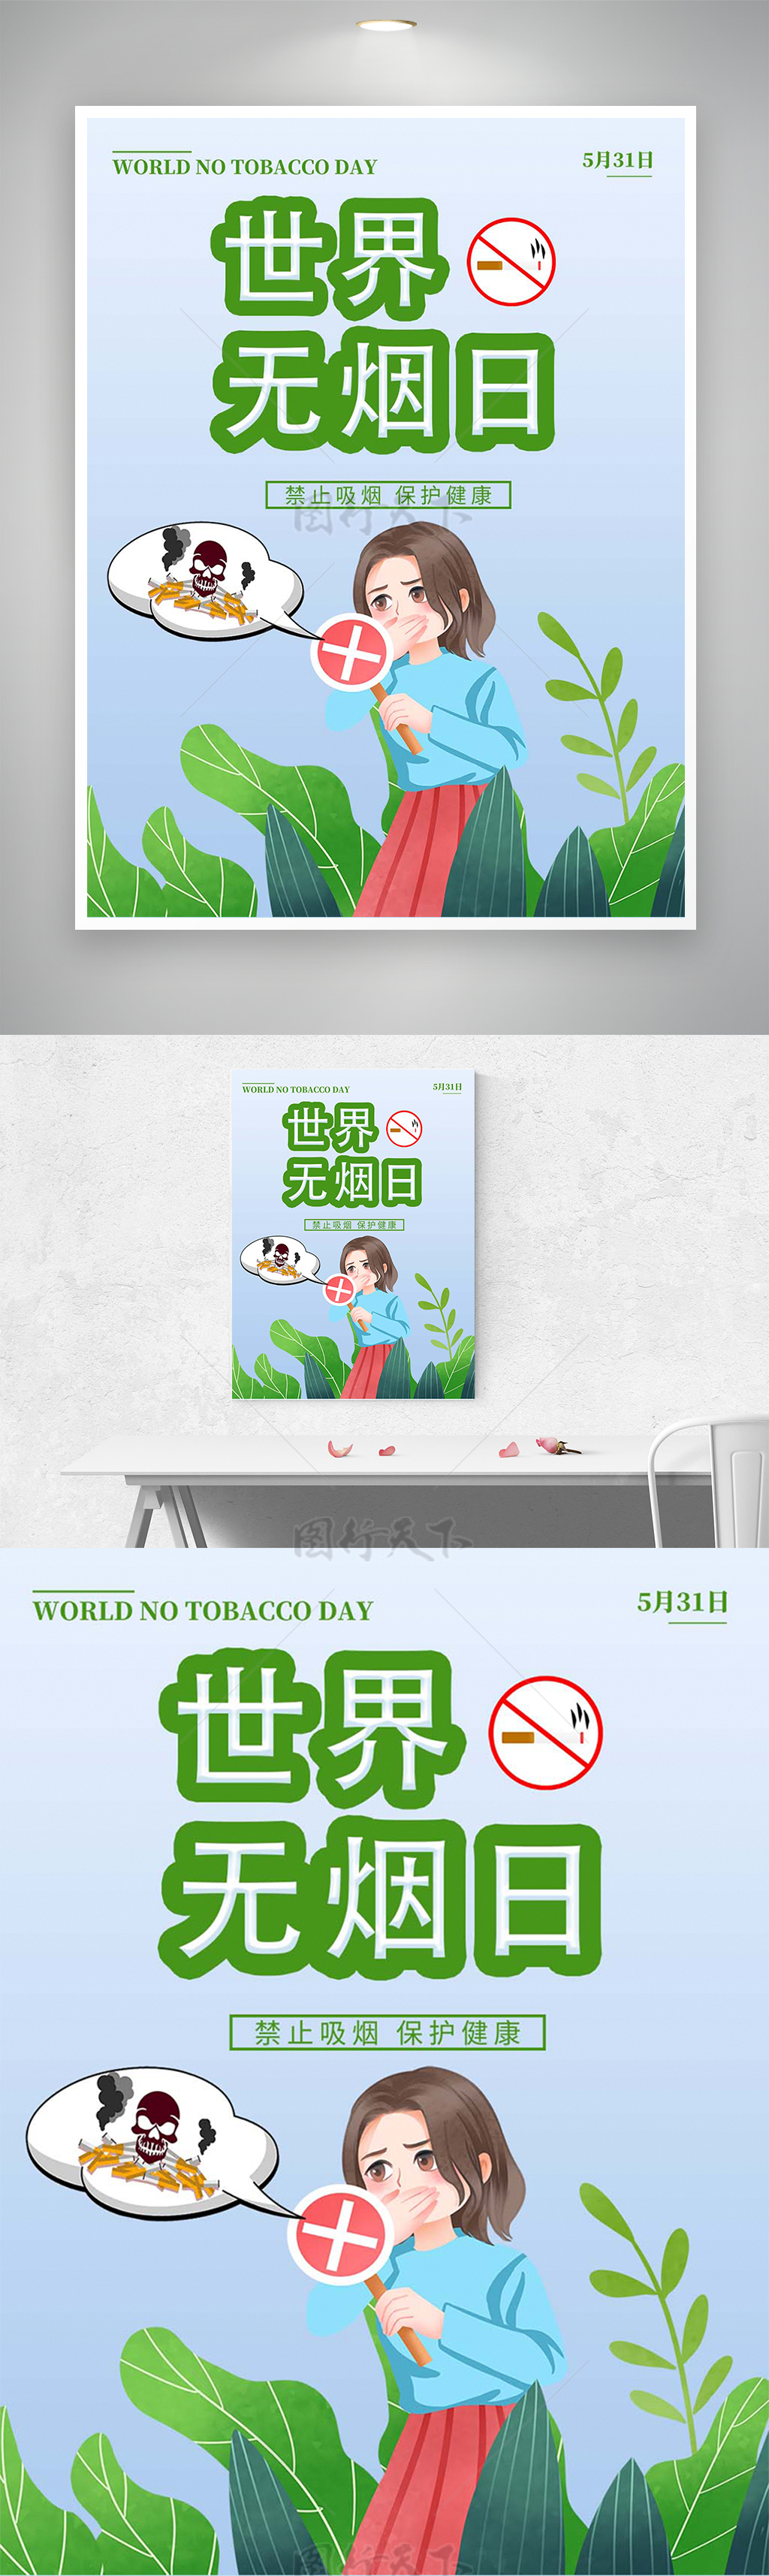 禁止吸烟保护健康世界无烟日宣传海报